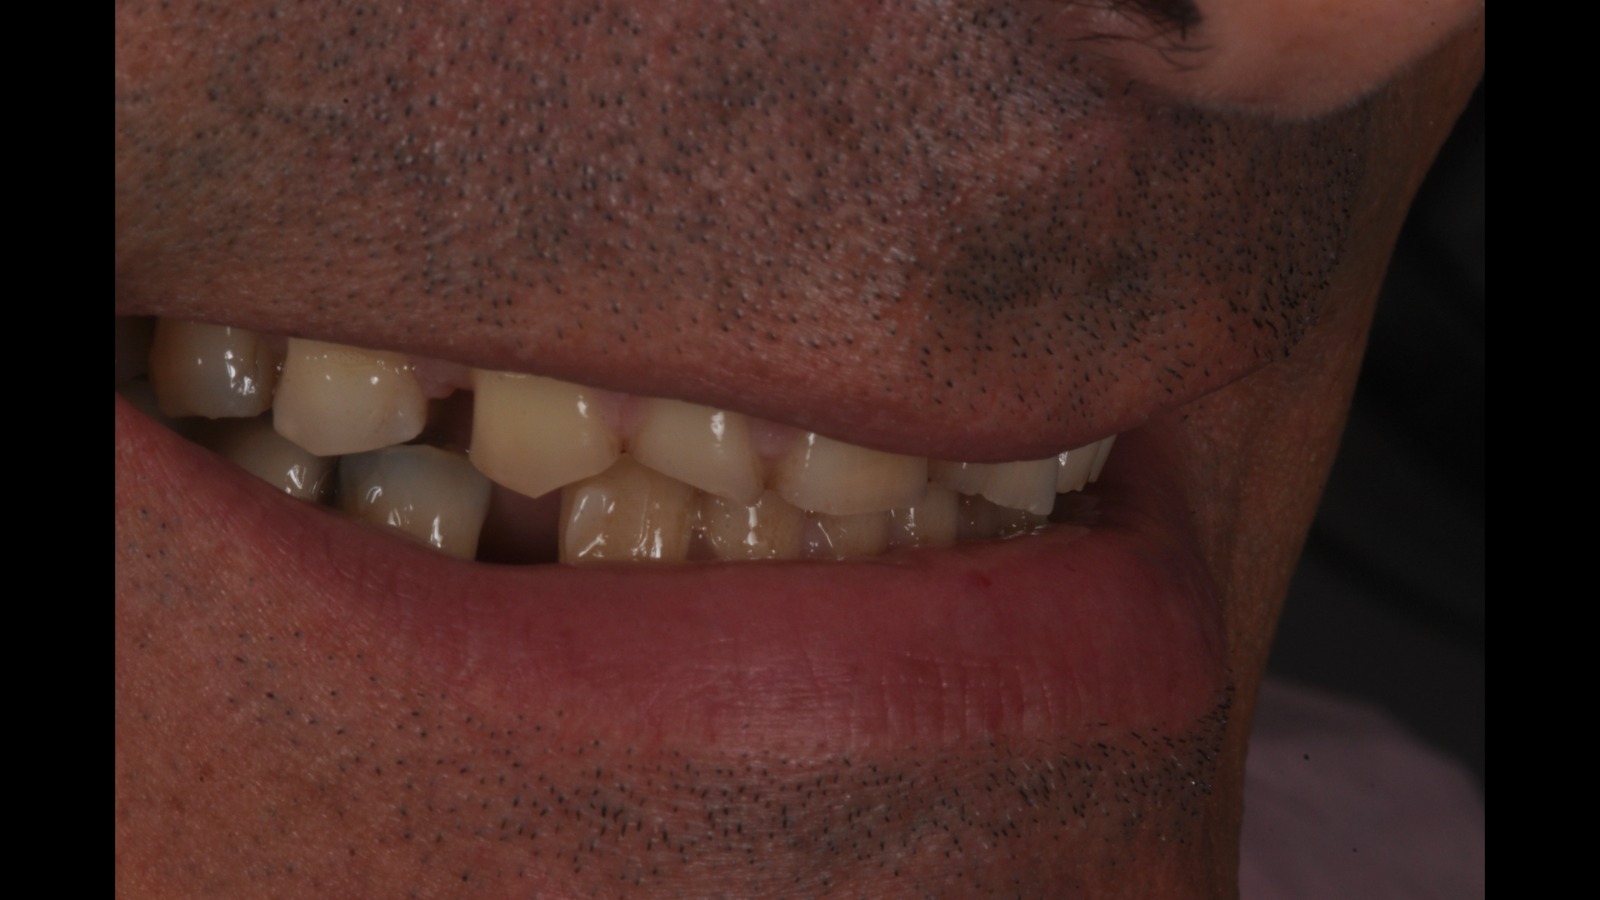 Agli Studi Mezzena giornata dedicata alle faccette dentali - Prima Treviglio